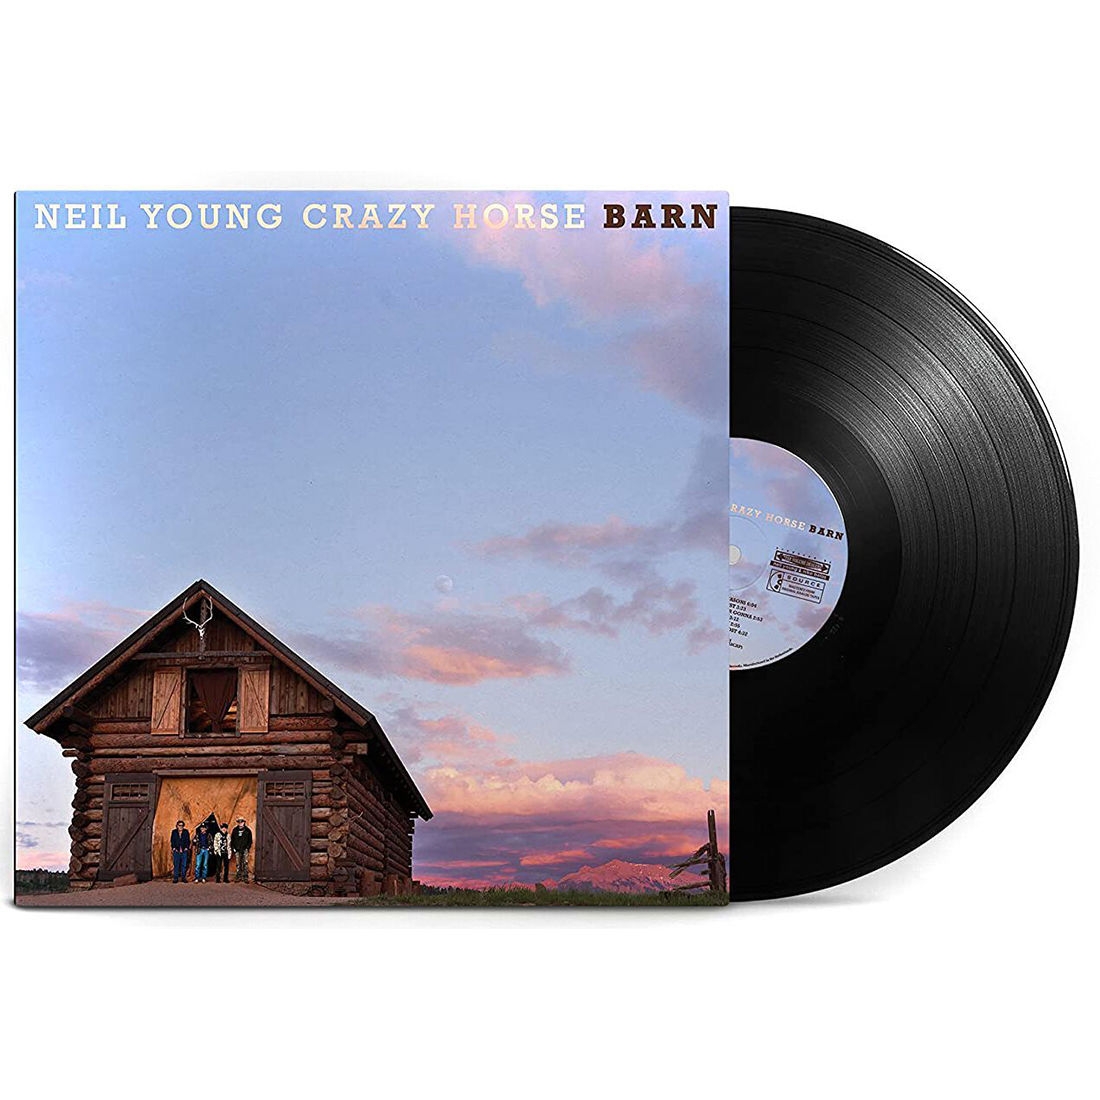 Виниловая Пластинка Young, Neil / Crazy Horse Barn (0093624878445) виниловая пластинка neil young crazy horse barn lp